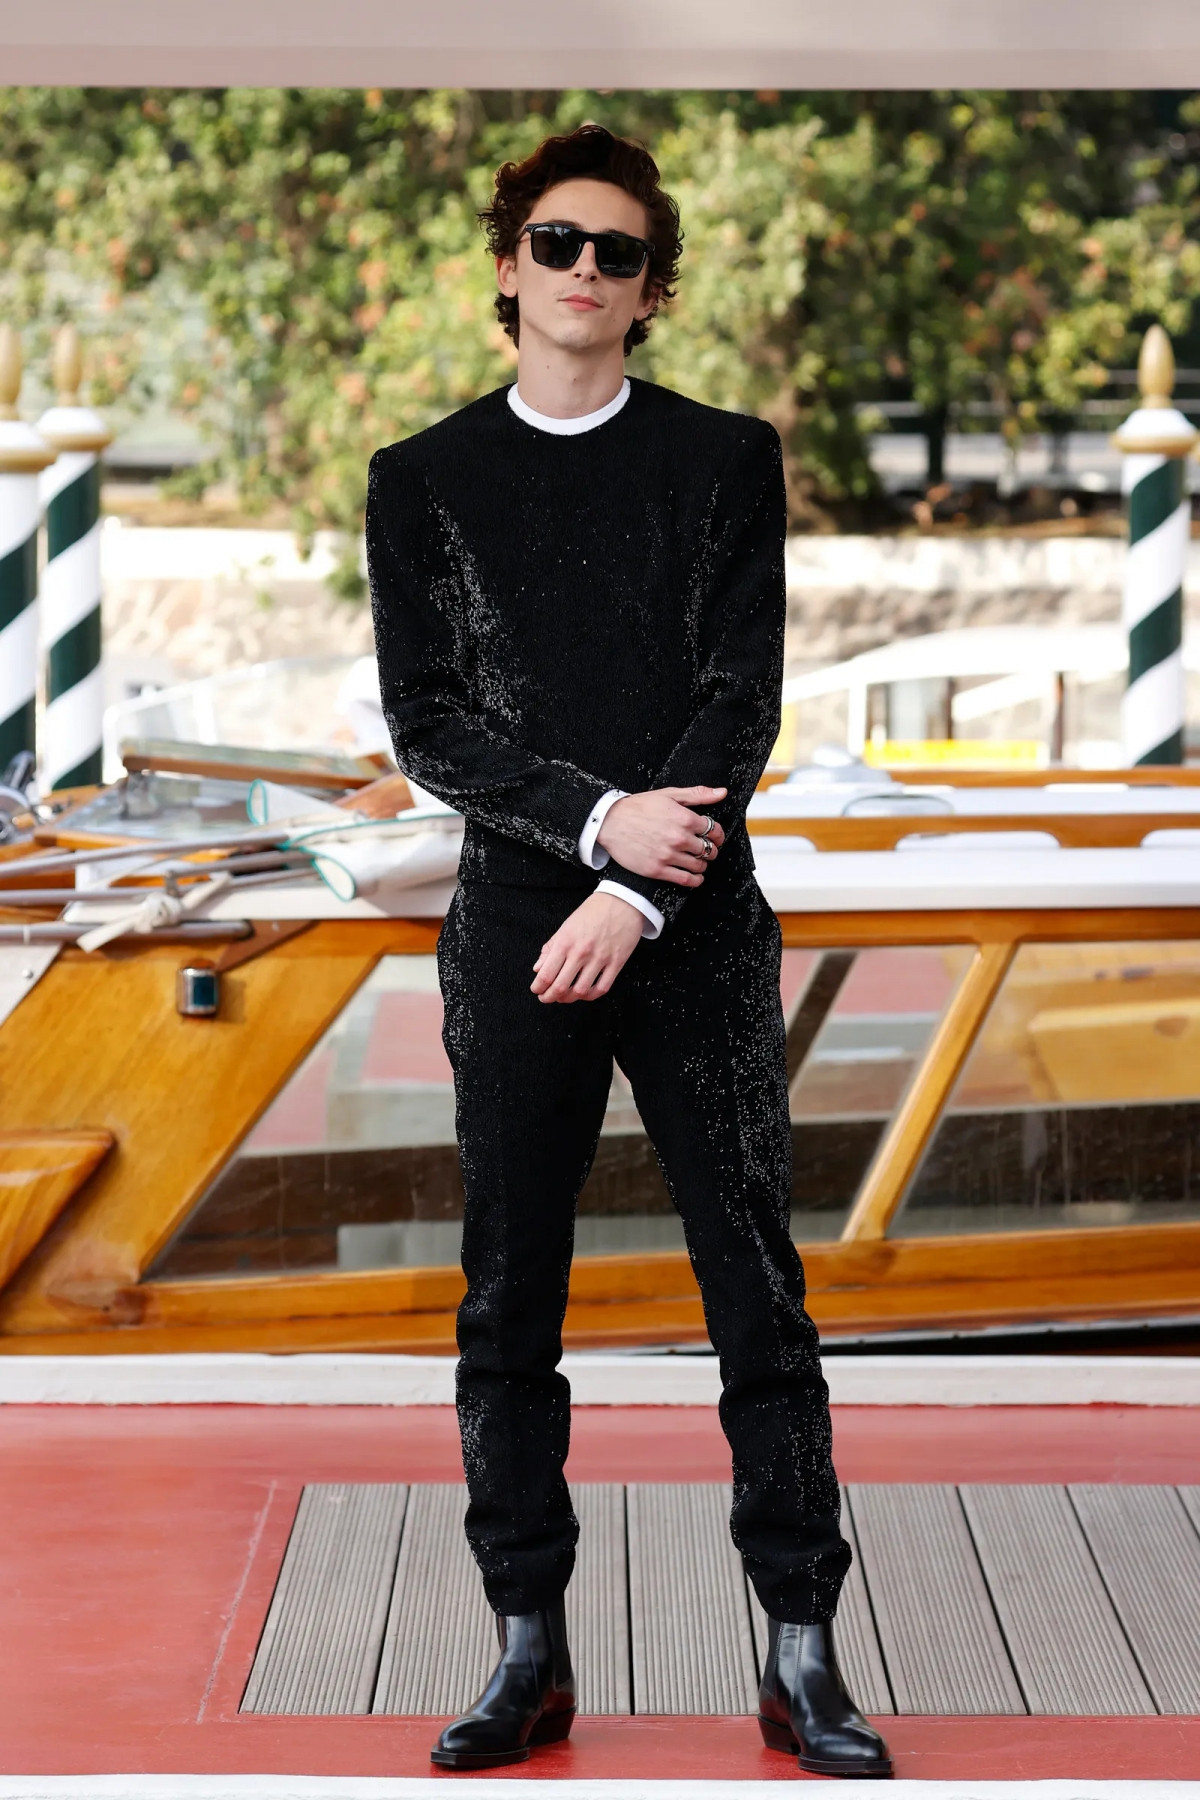  Tạp chí Vogue bình chọn Timothée Chalamet là sao nam mặc đẹp nhất liên hoan phim Venice 2021. Nam tài tử thu hút mọi ánh với thiết kế đến từ Haider Ackermann trong buổi ra mắt bom tấn sử thi 